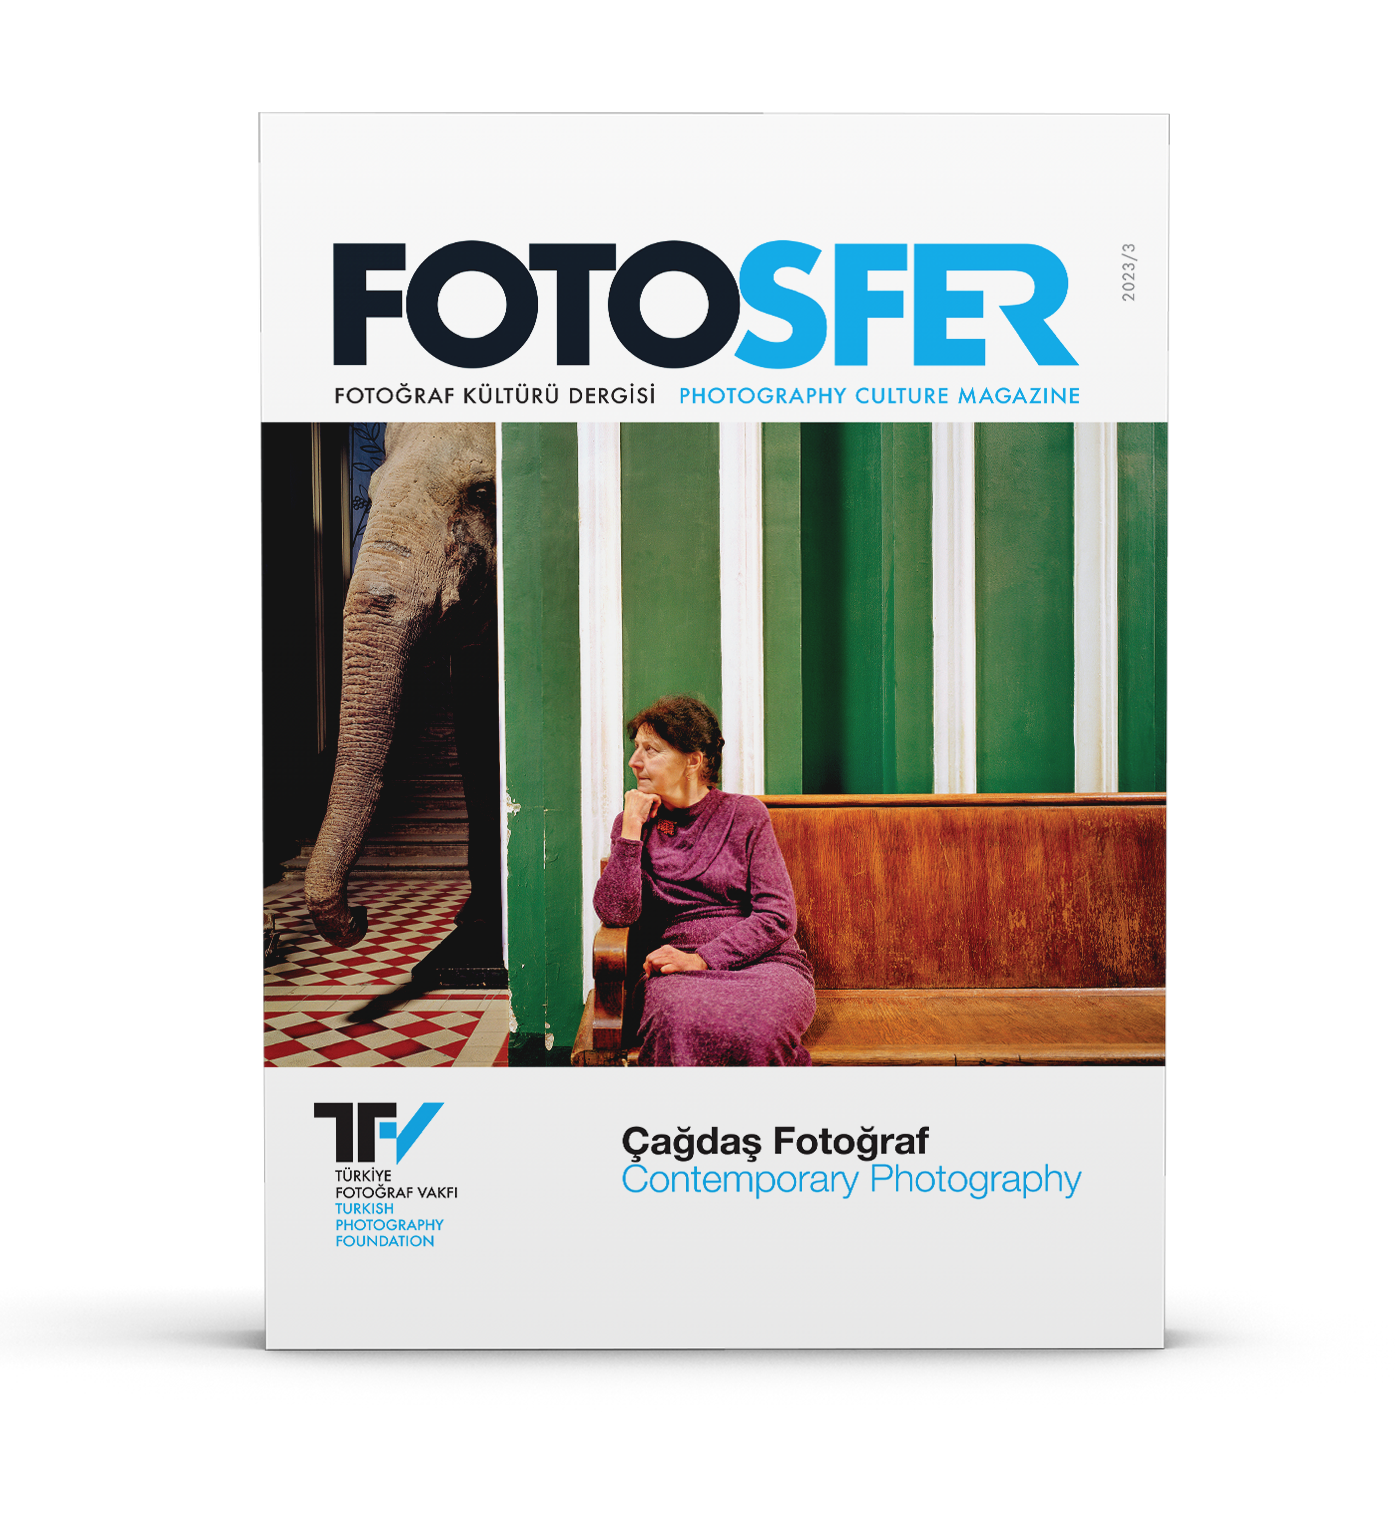 Fotosfer, Fotoğraf Kültürü Dergisi